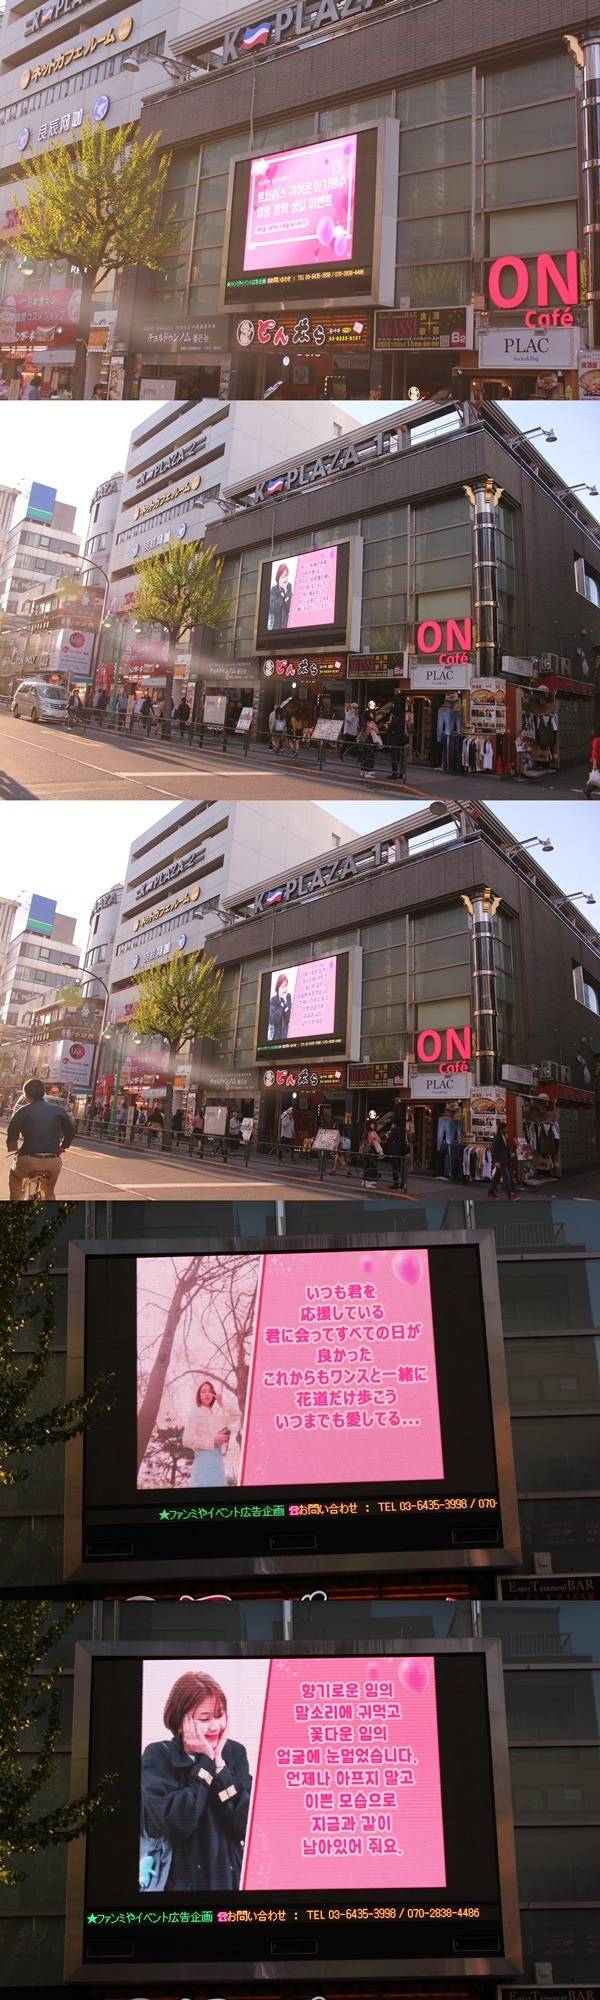 그룹 트와이스 채영 생일 서포트 전광판이 공개됐다. 생일 전광판은 한국과 일본에서 확인할 수 있다. /클릭스타워즈 제공